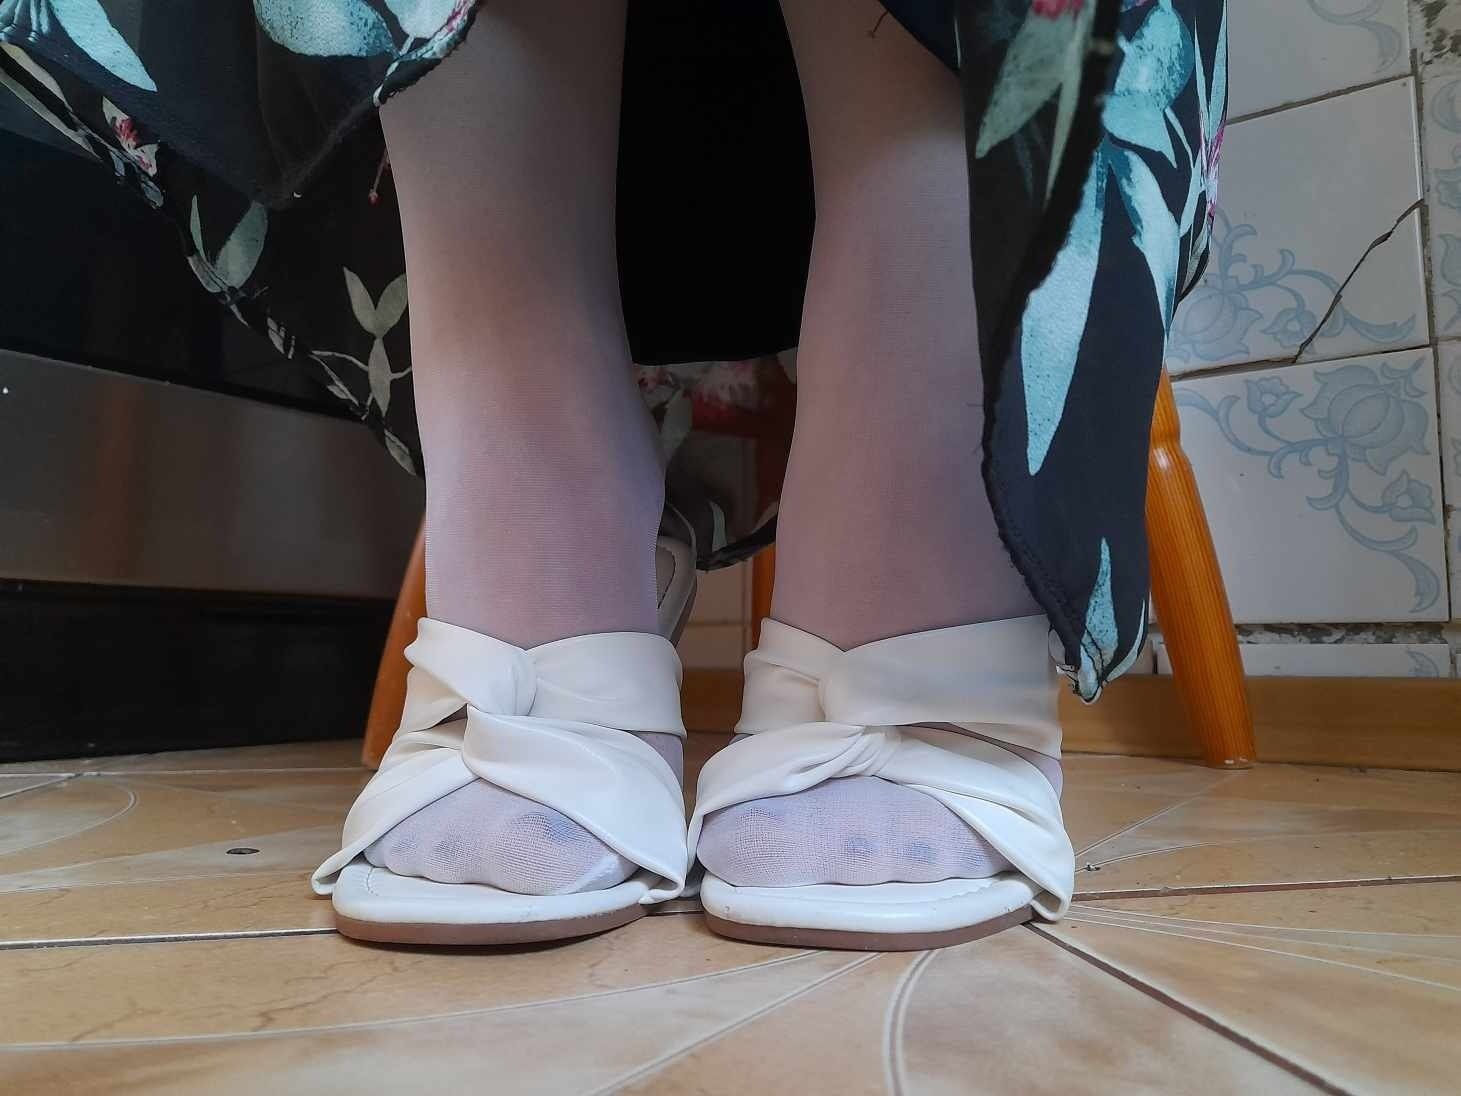 My sexy feet  #12